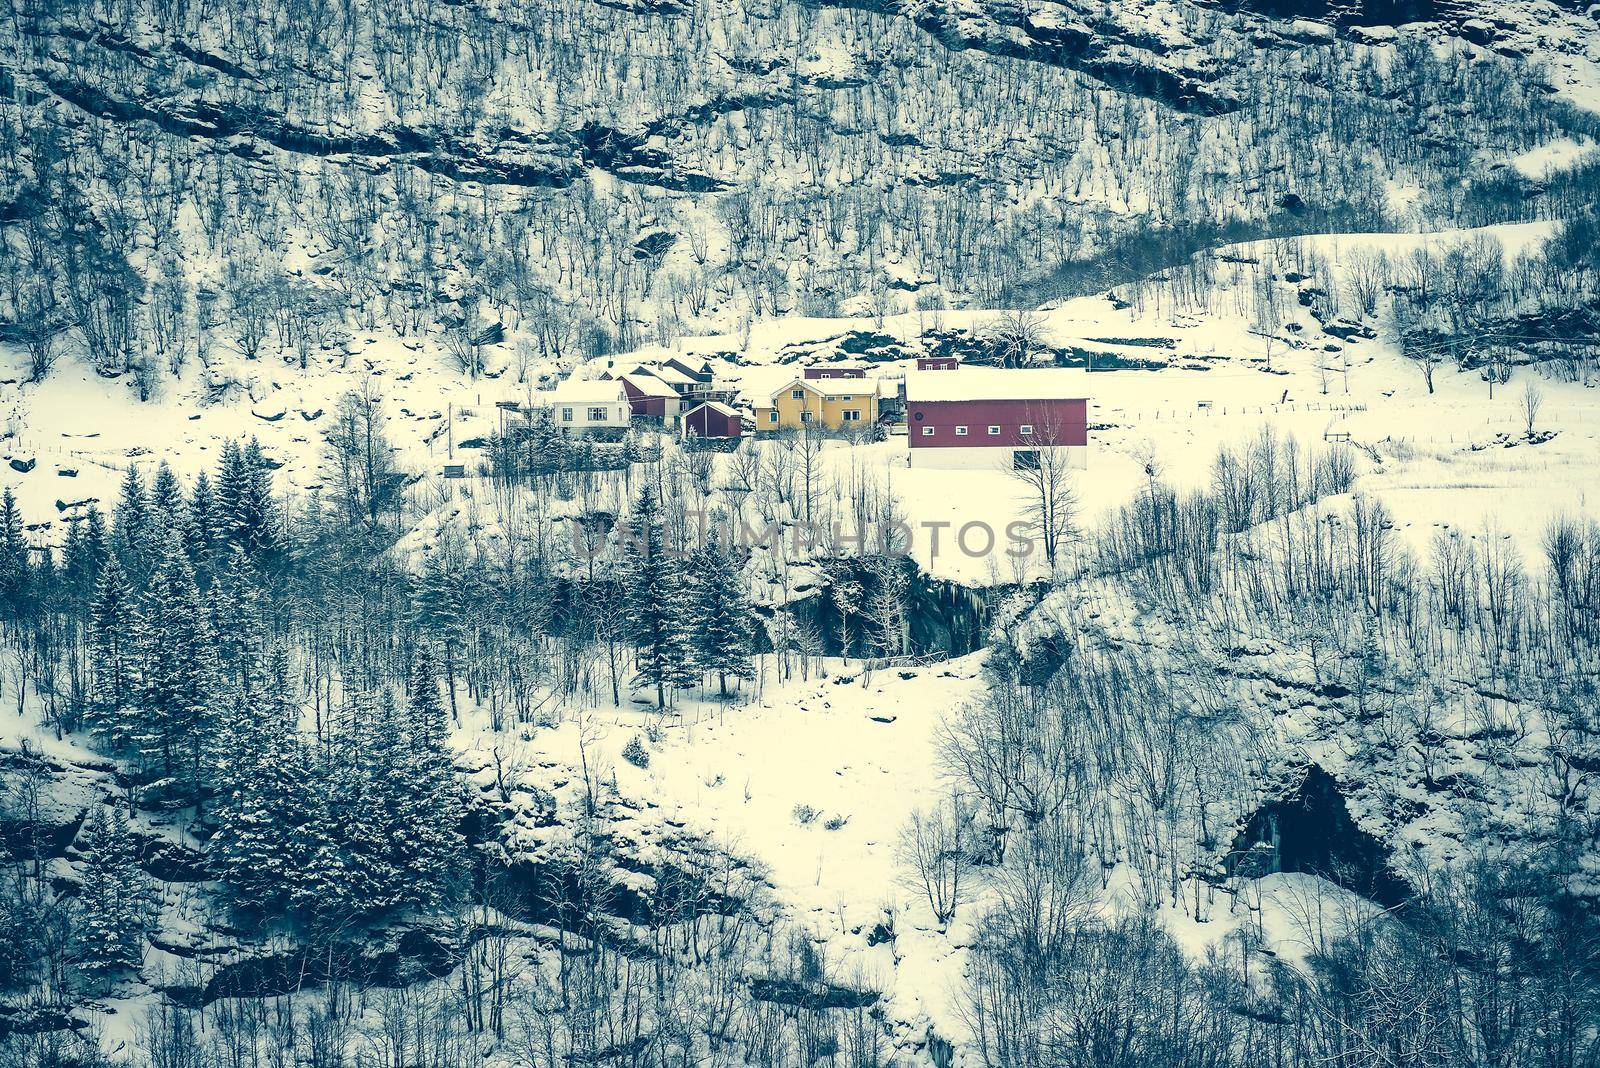 houses in snowy mountains by GekaSkr